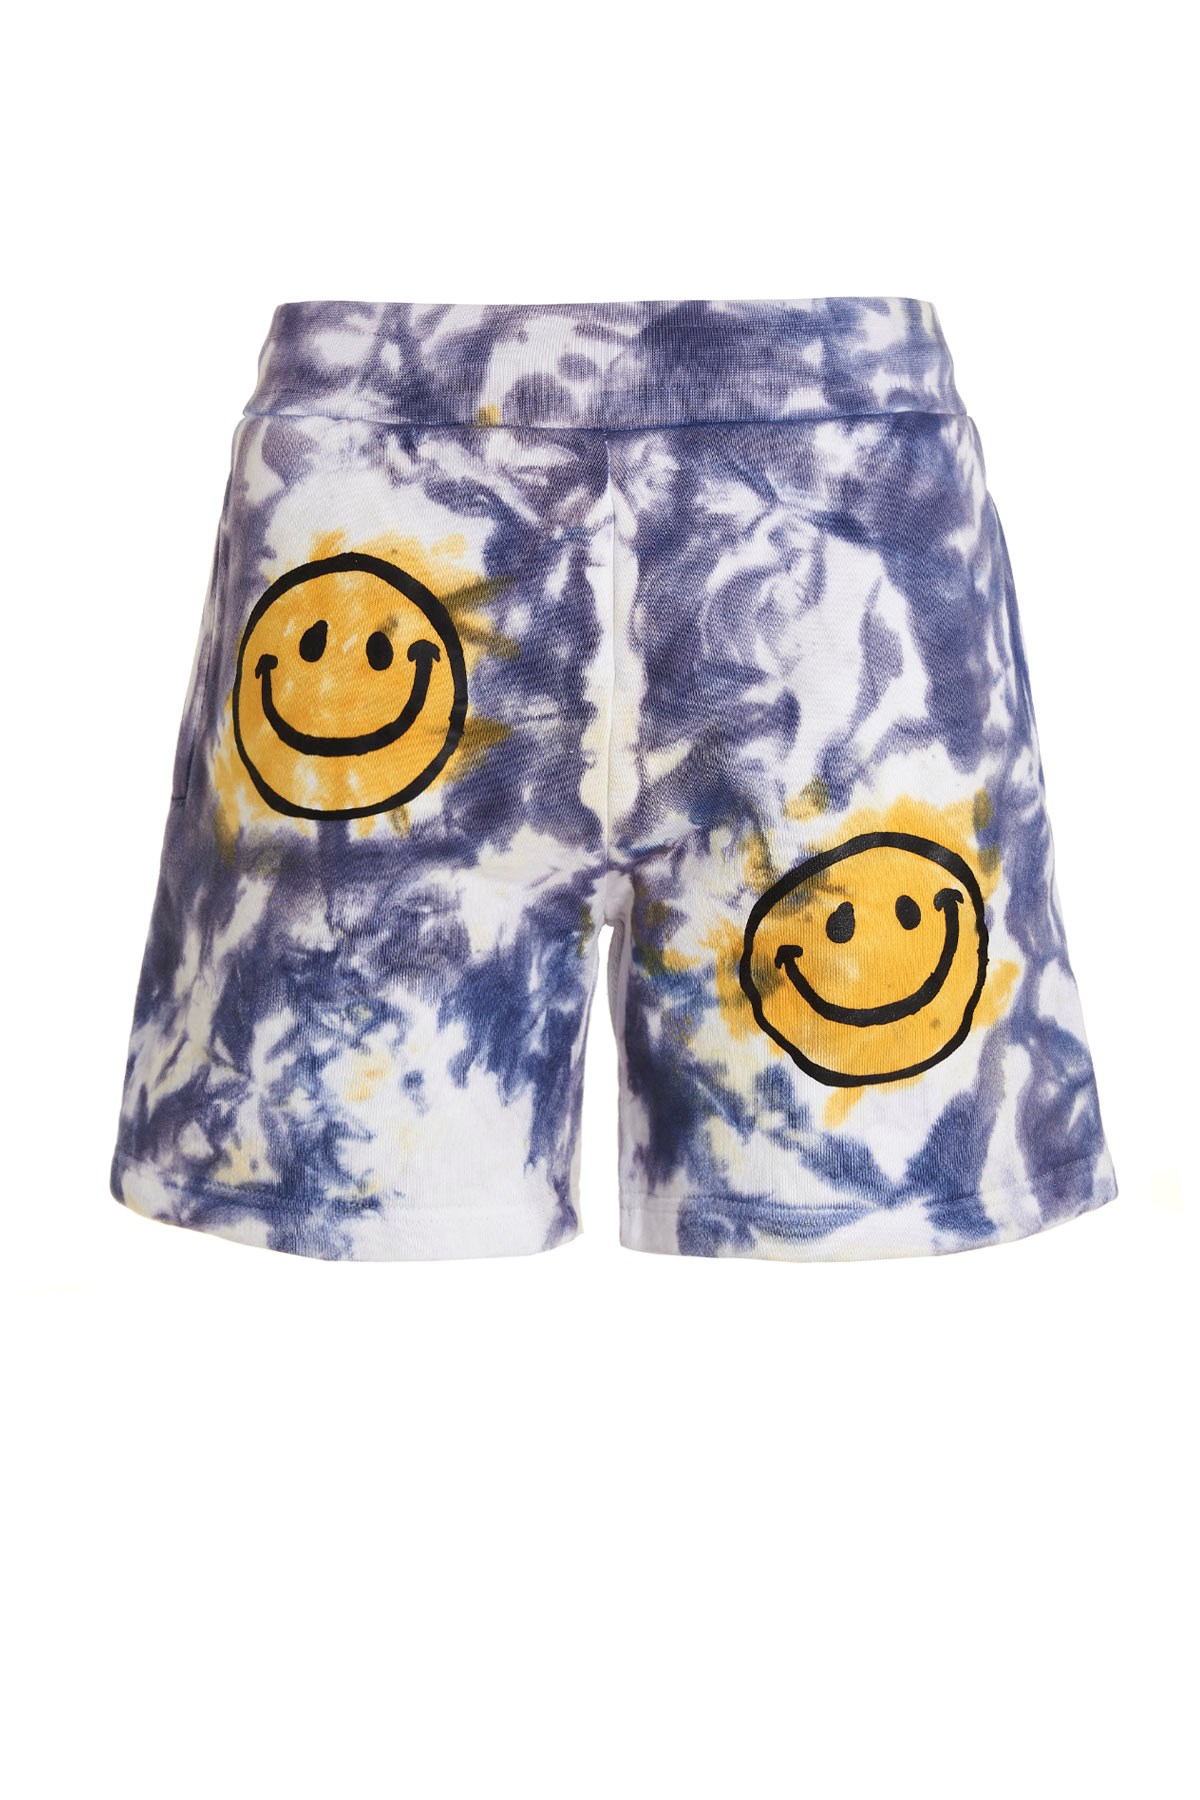 MARKET Bermuda-Shorts 'Smiley Sun Day'